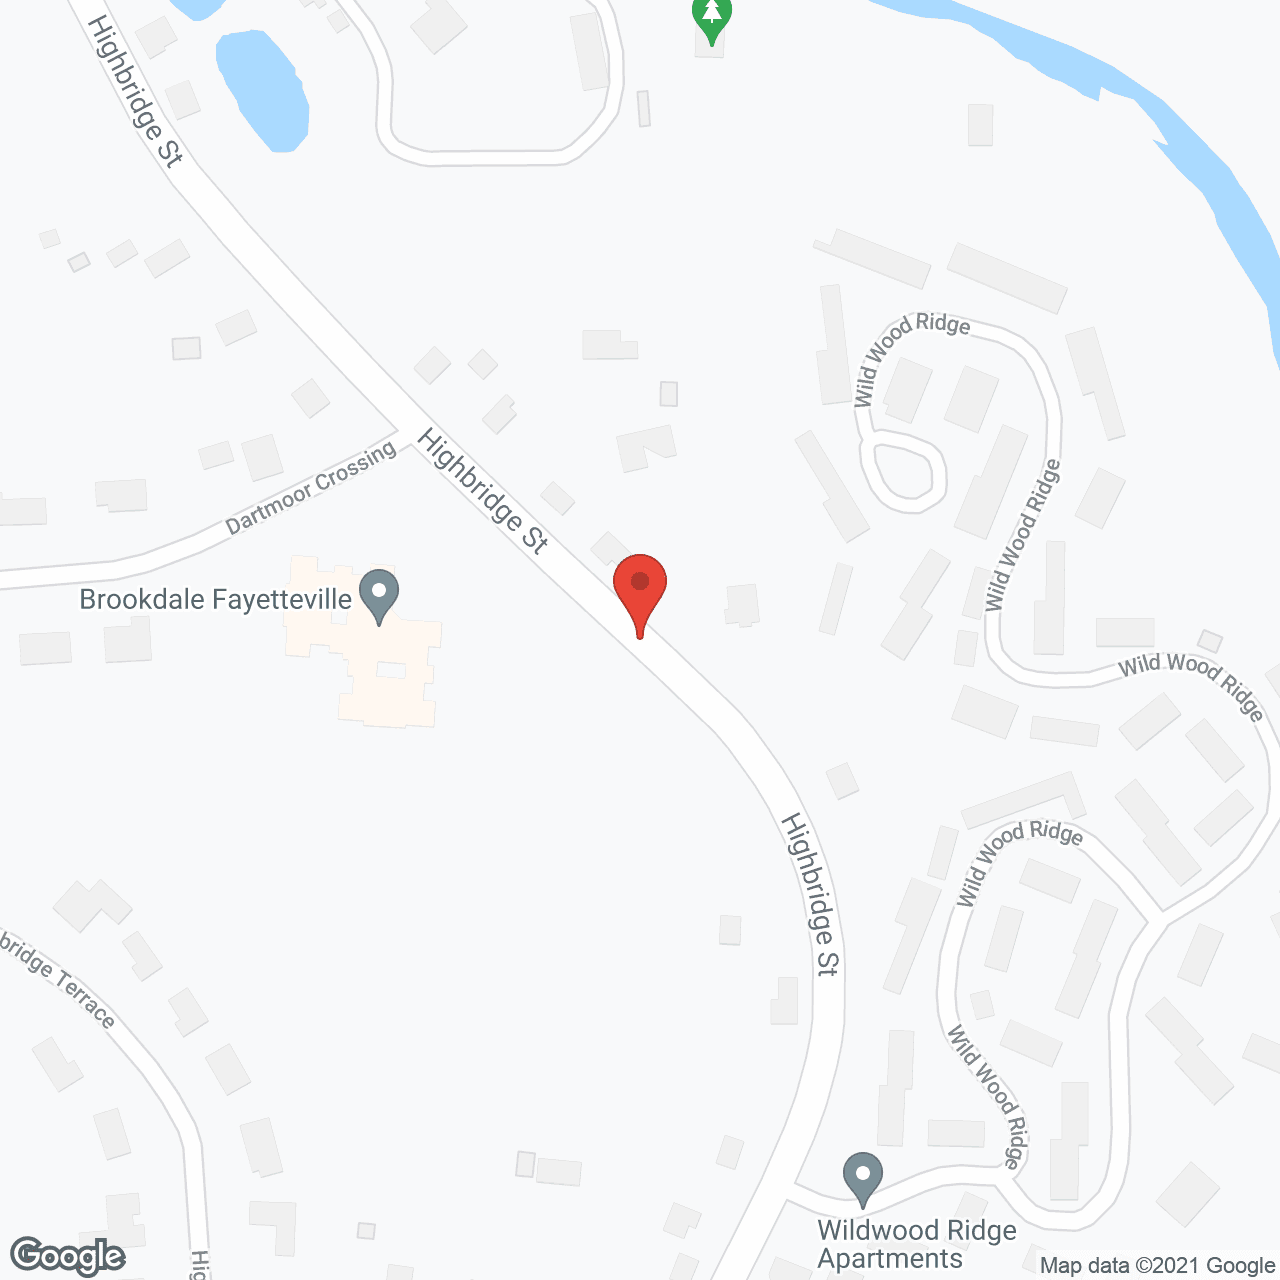 Brookdale Fayetteville in google map